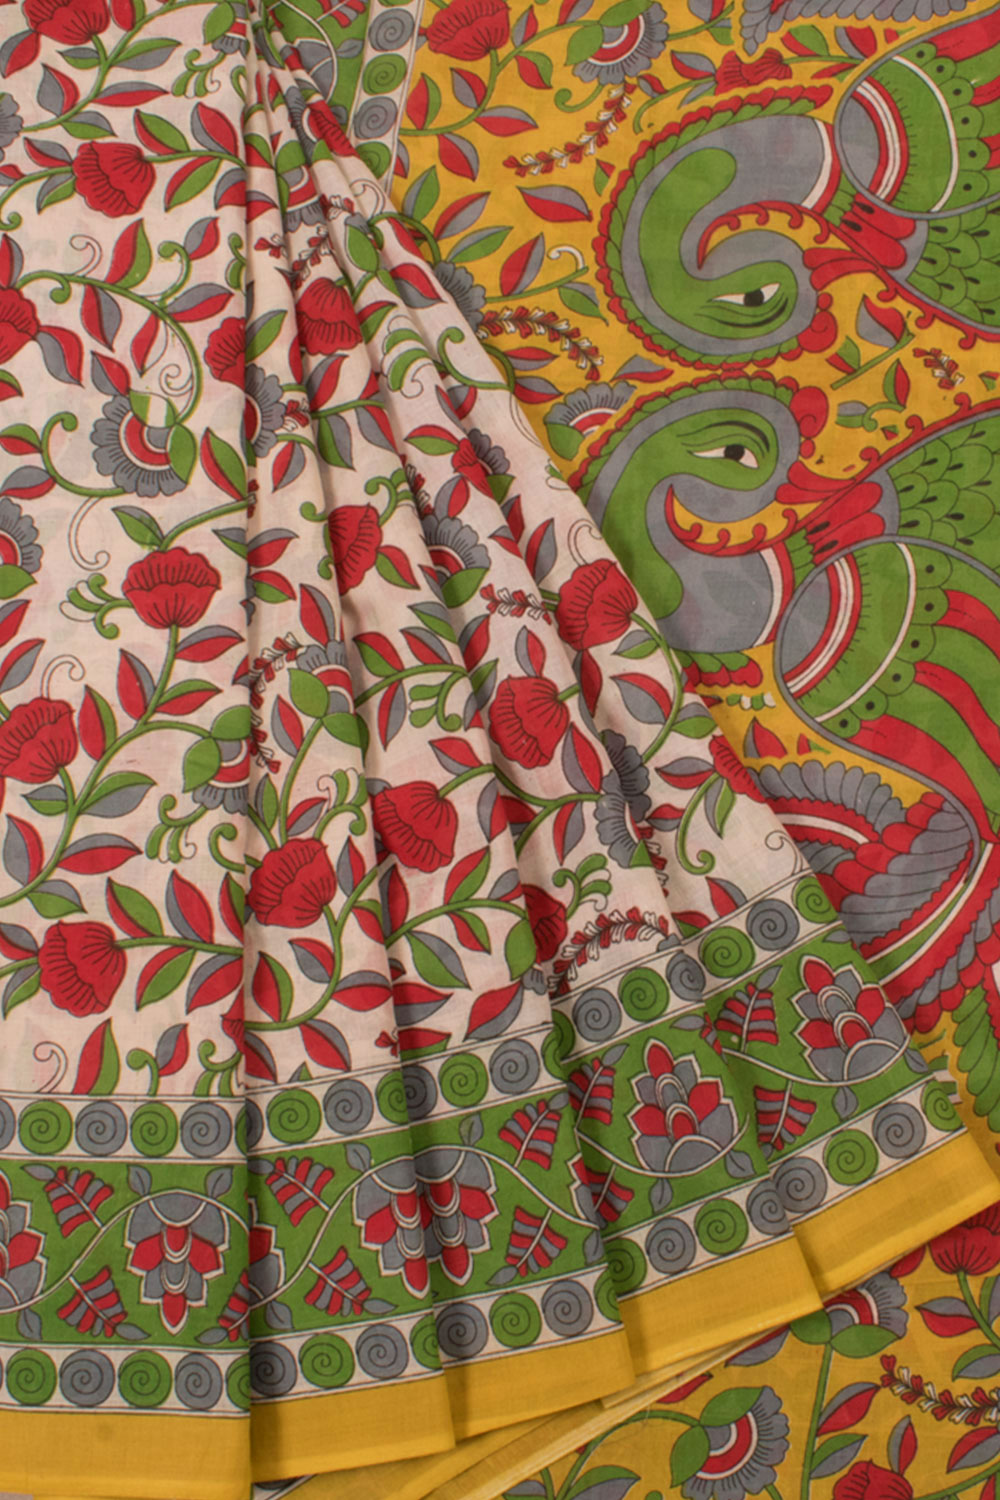 Printed Kalamkari Cotton Saree with Floral Design and Peacock Pallu